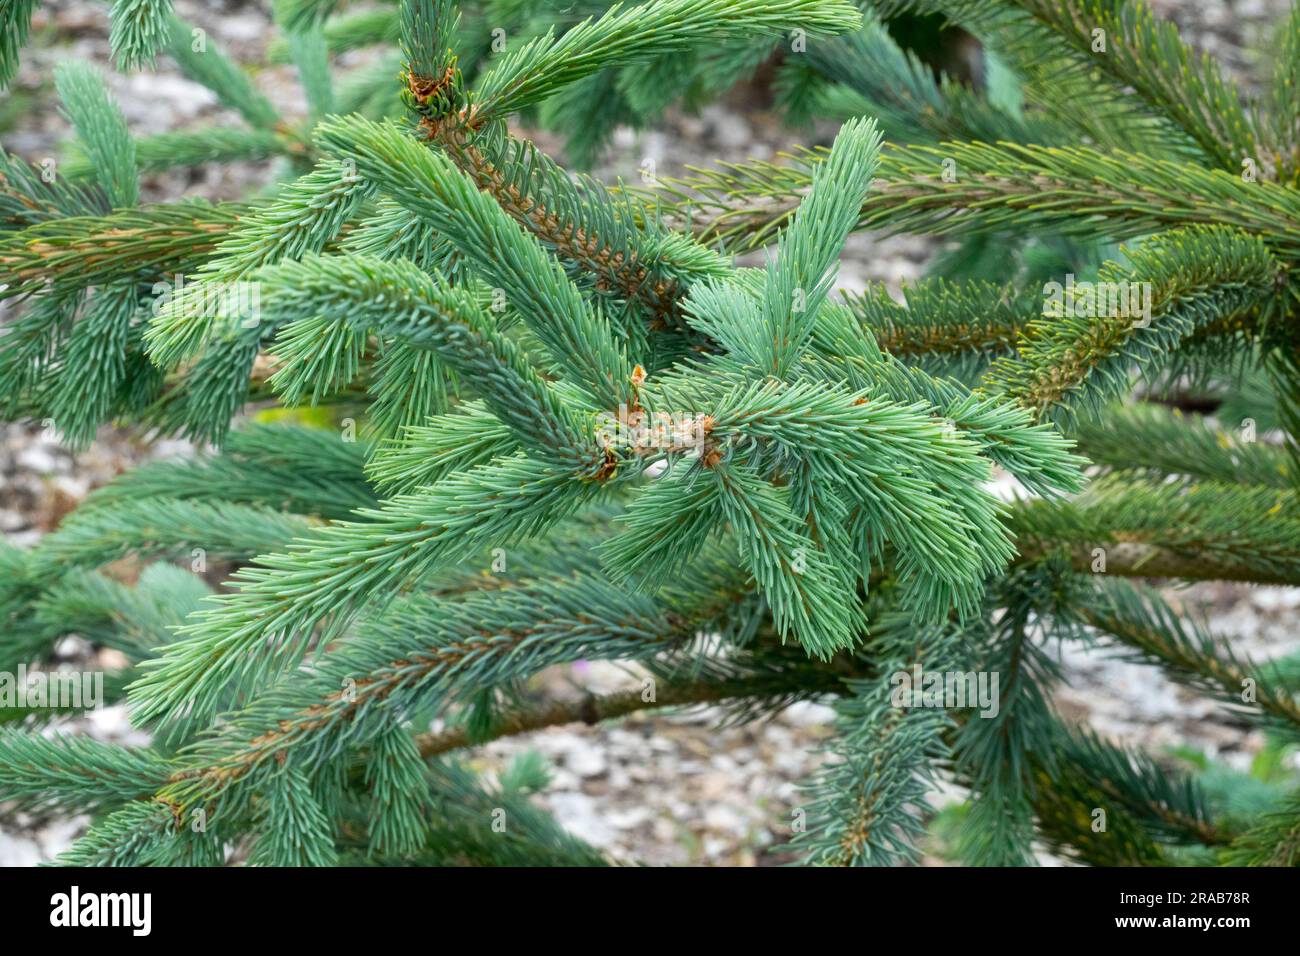 Picea engelmannii „Snake“ die Äste sind seilförmig, die Nadeln sind dunkelblau-grün syn. Picea engelmannii Glauca Virgata, Picea engelmannii Virgata Stockfoto